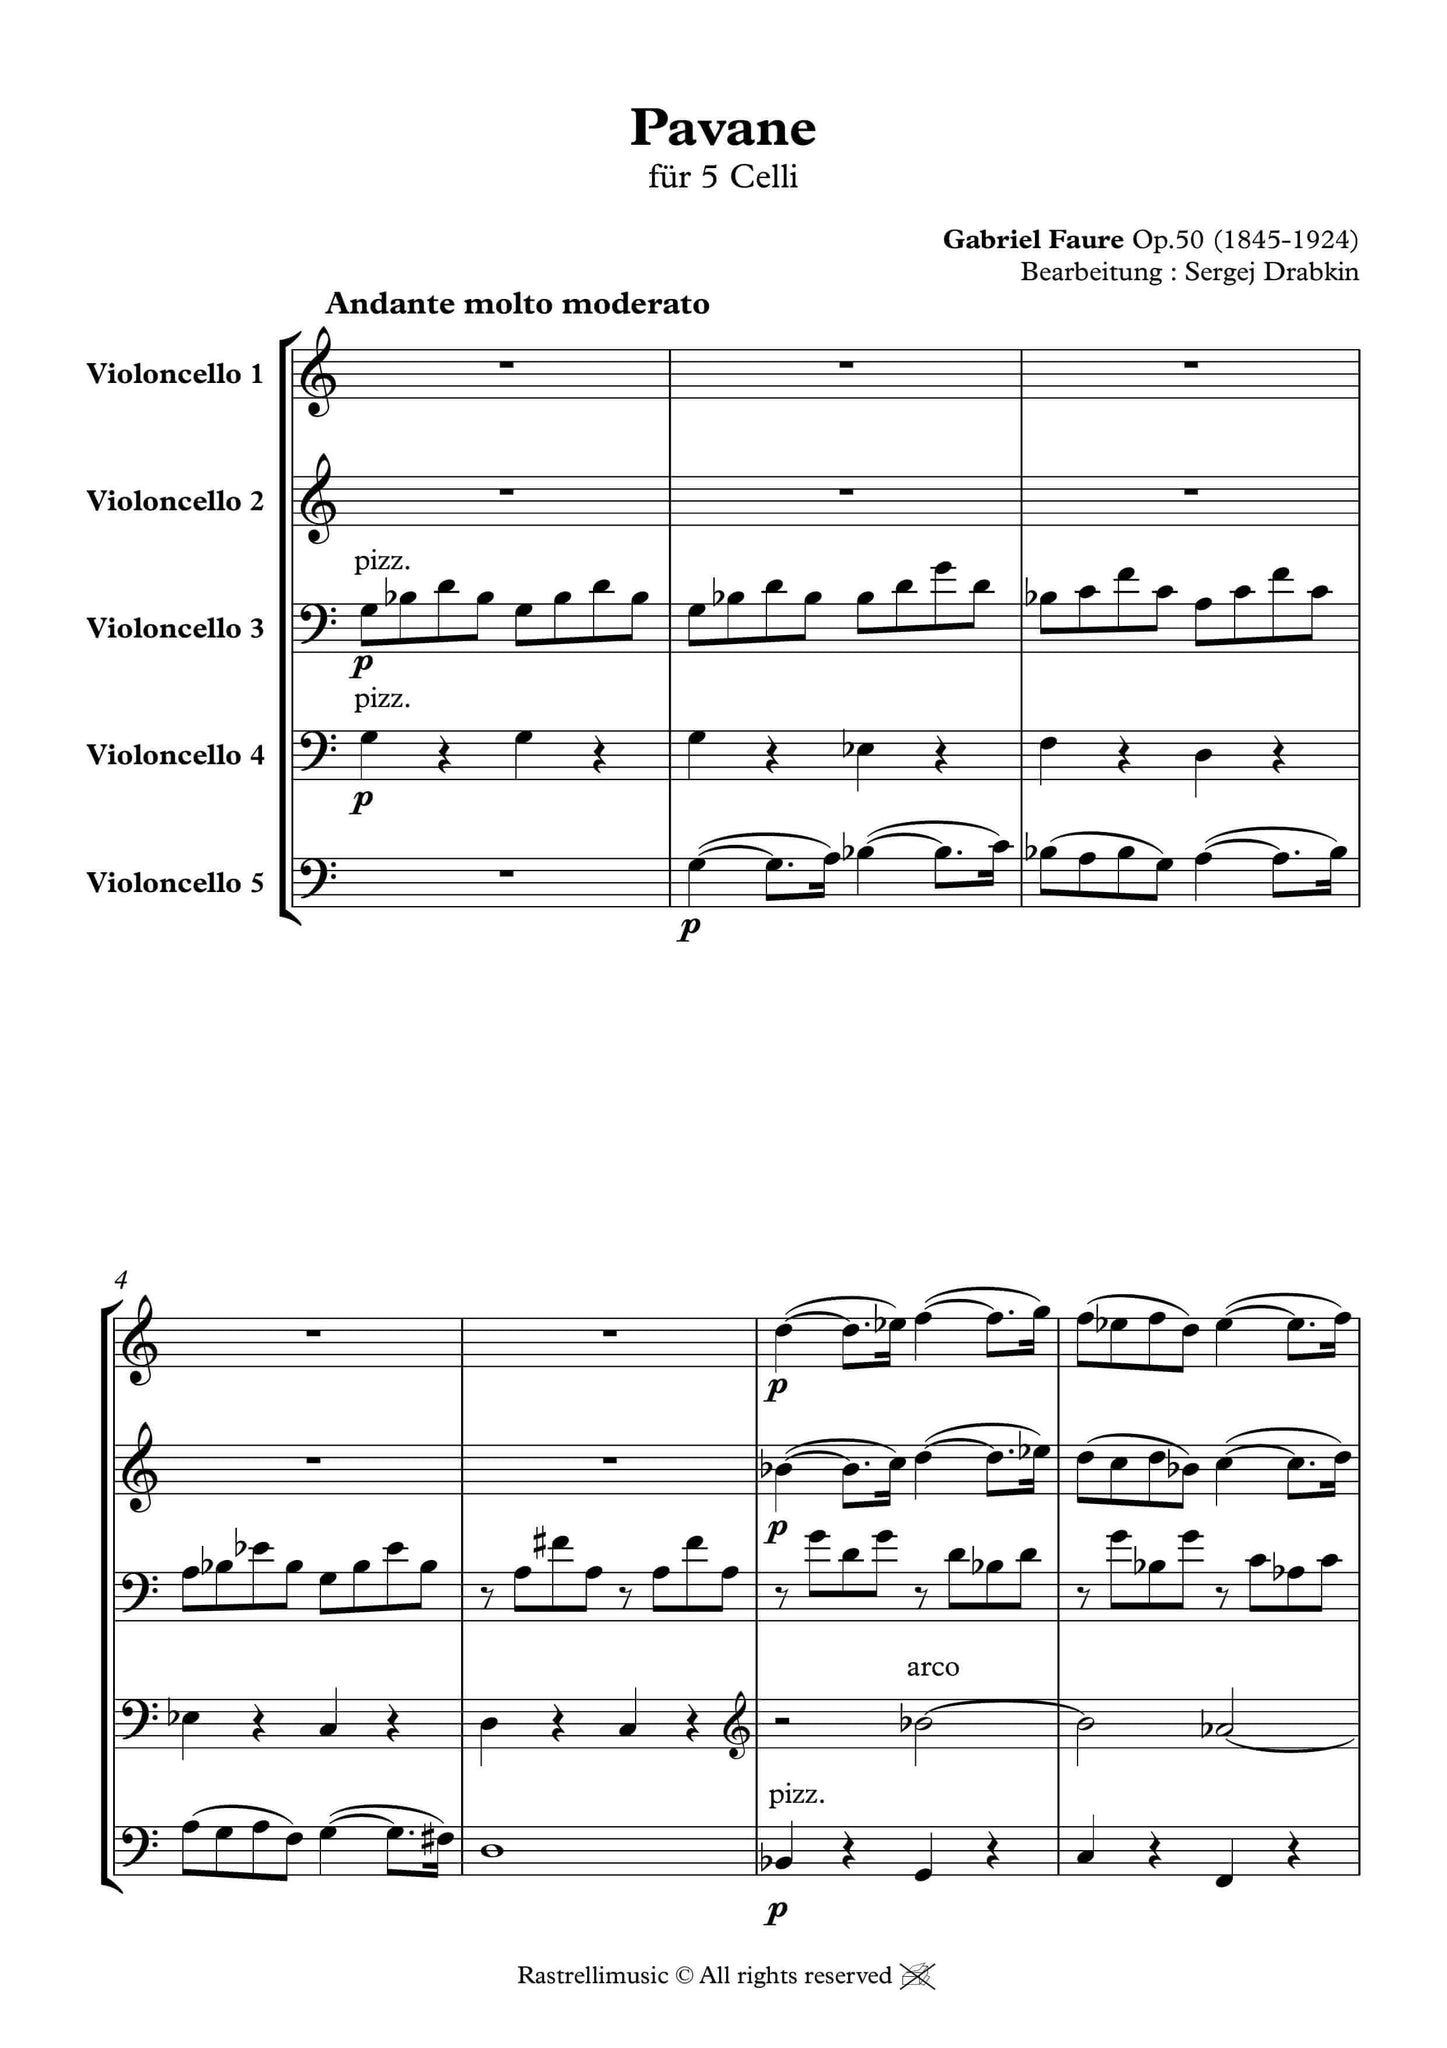 Musiknoten für 5 Cellos aus dem Stück Pavane von Fauré, Gabriel